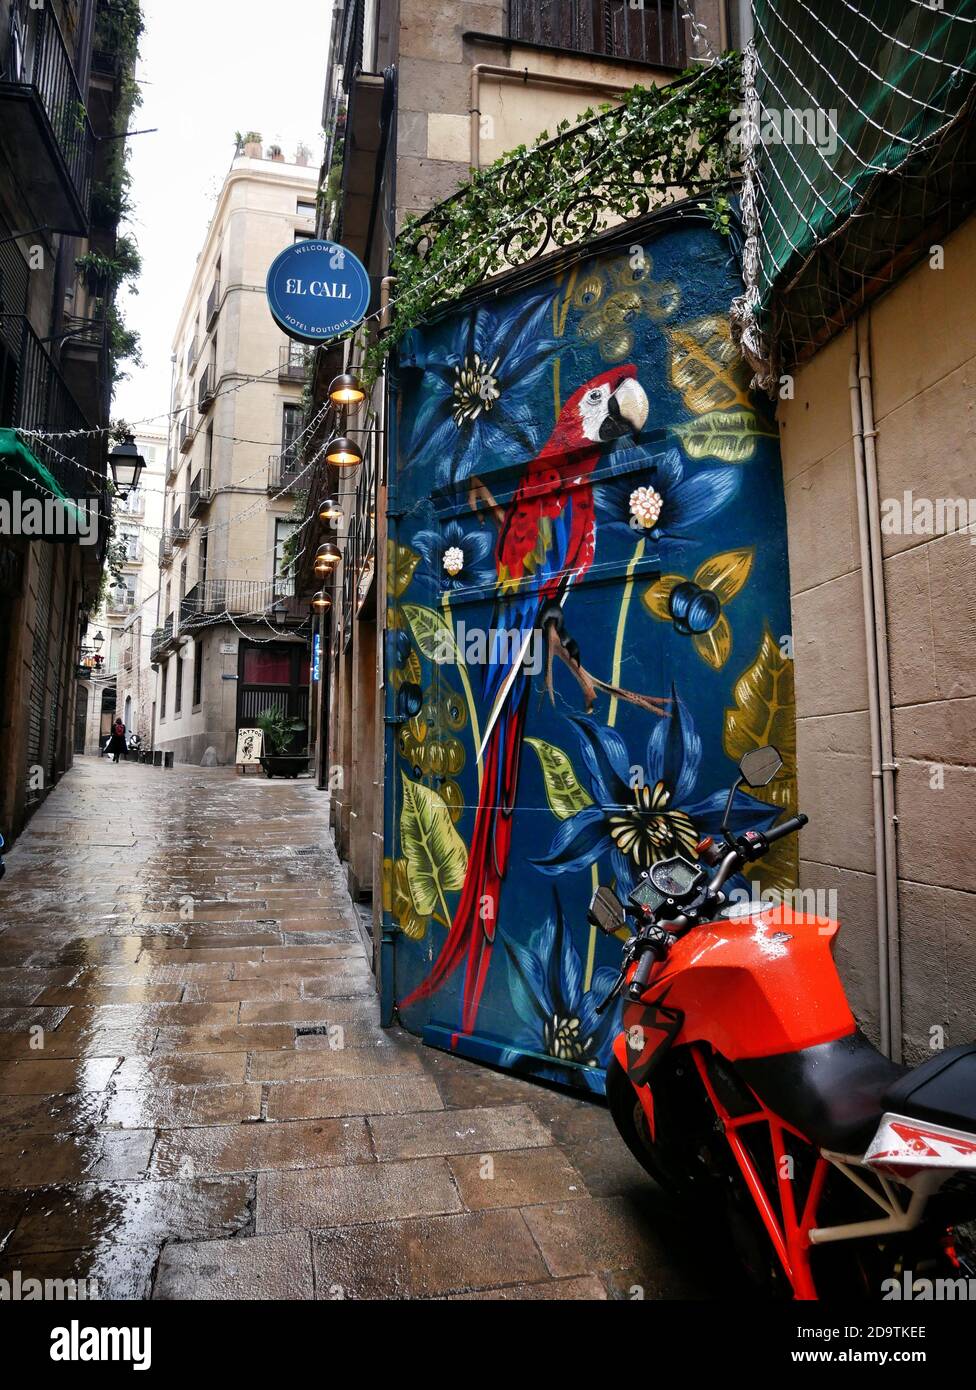 Ein Wandgemälde im Gotischen Viertel, BarcelonaBild von Julian Brown Stockfoto